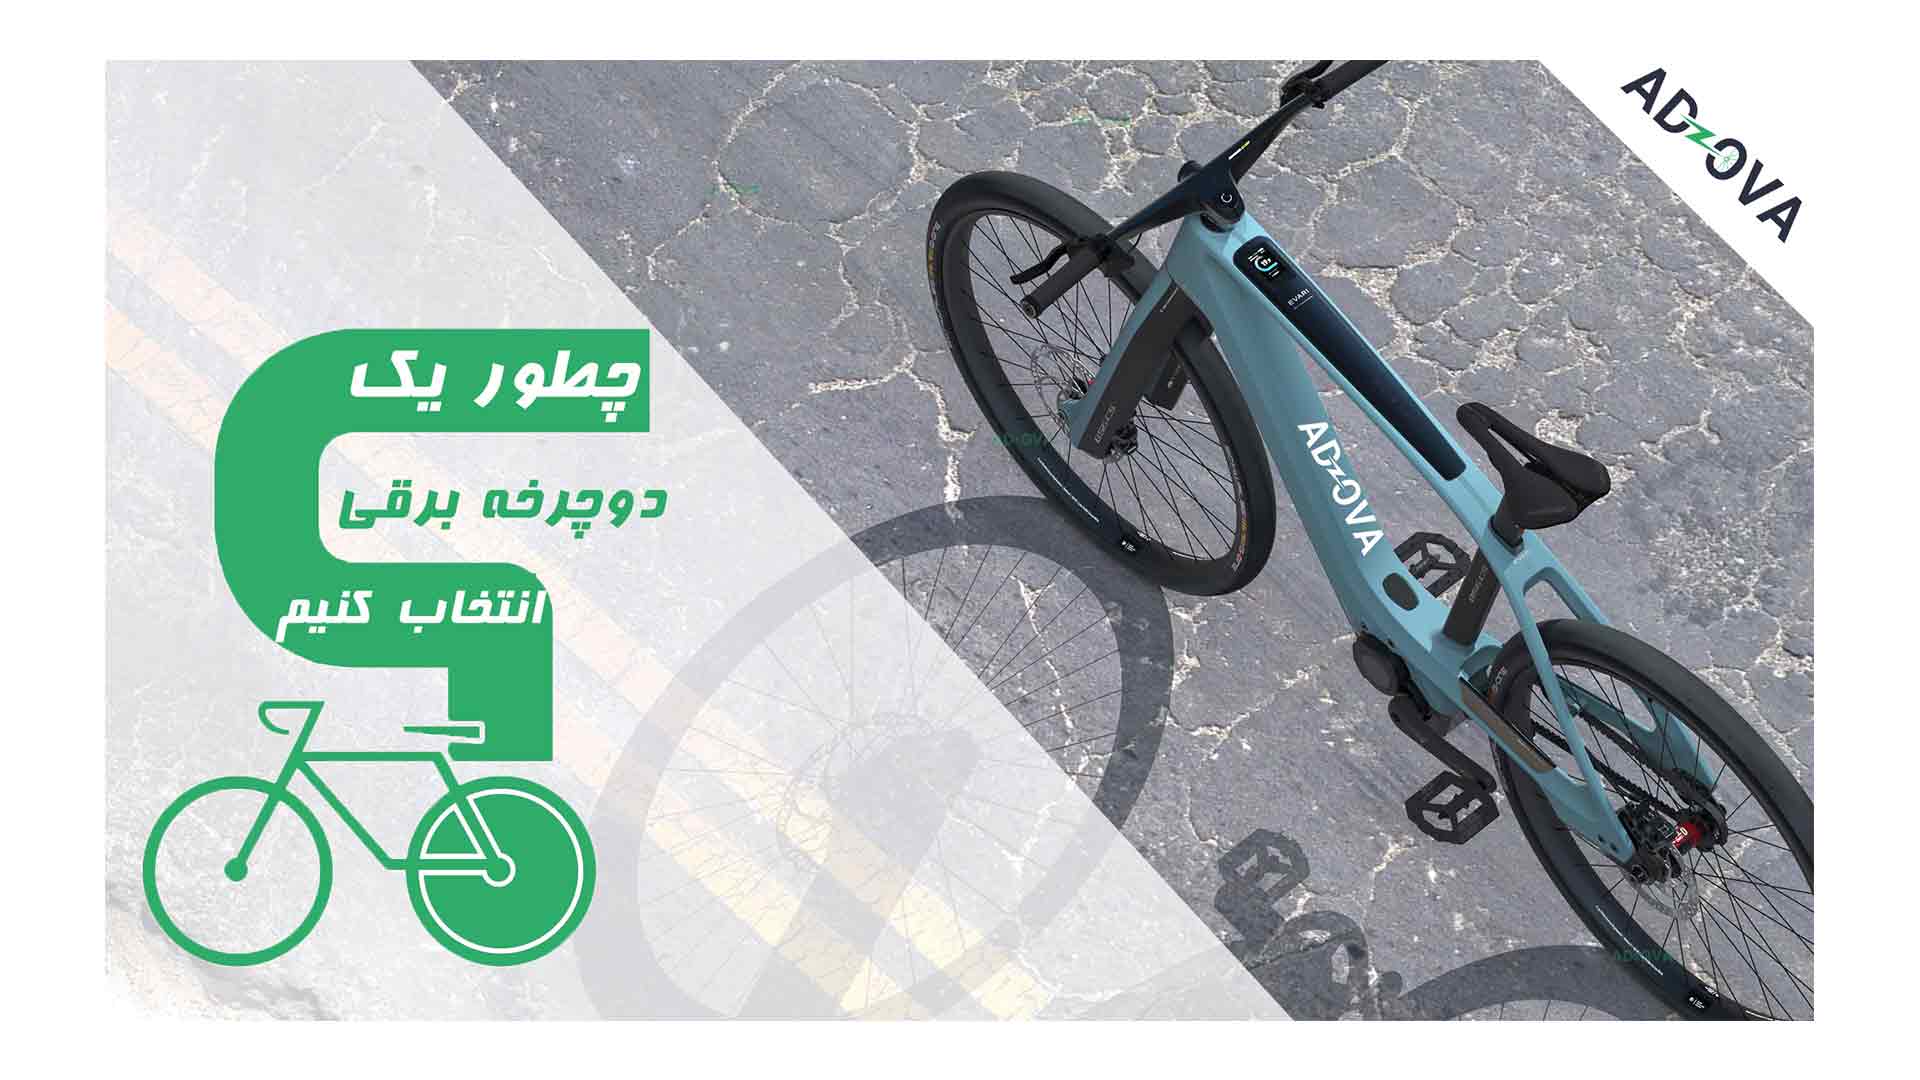 طراحی سایت سورا - آدوا - چطور یک دوچرخه برقی انتخاب کنیم 